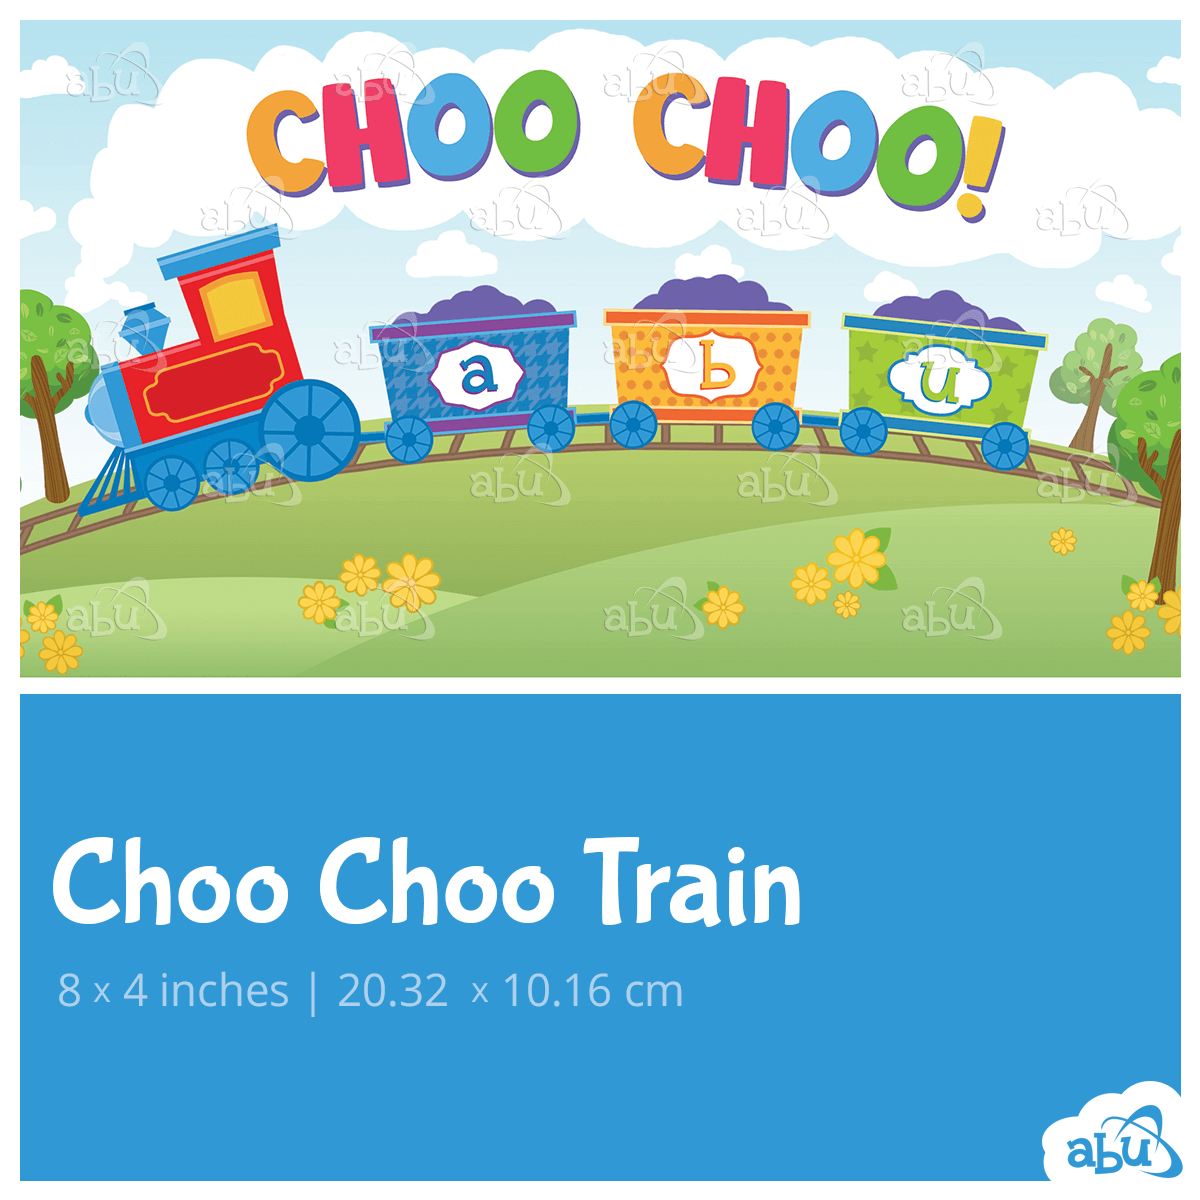 Choo Choo Train - ABUniverse Europe